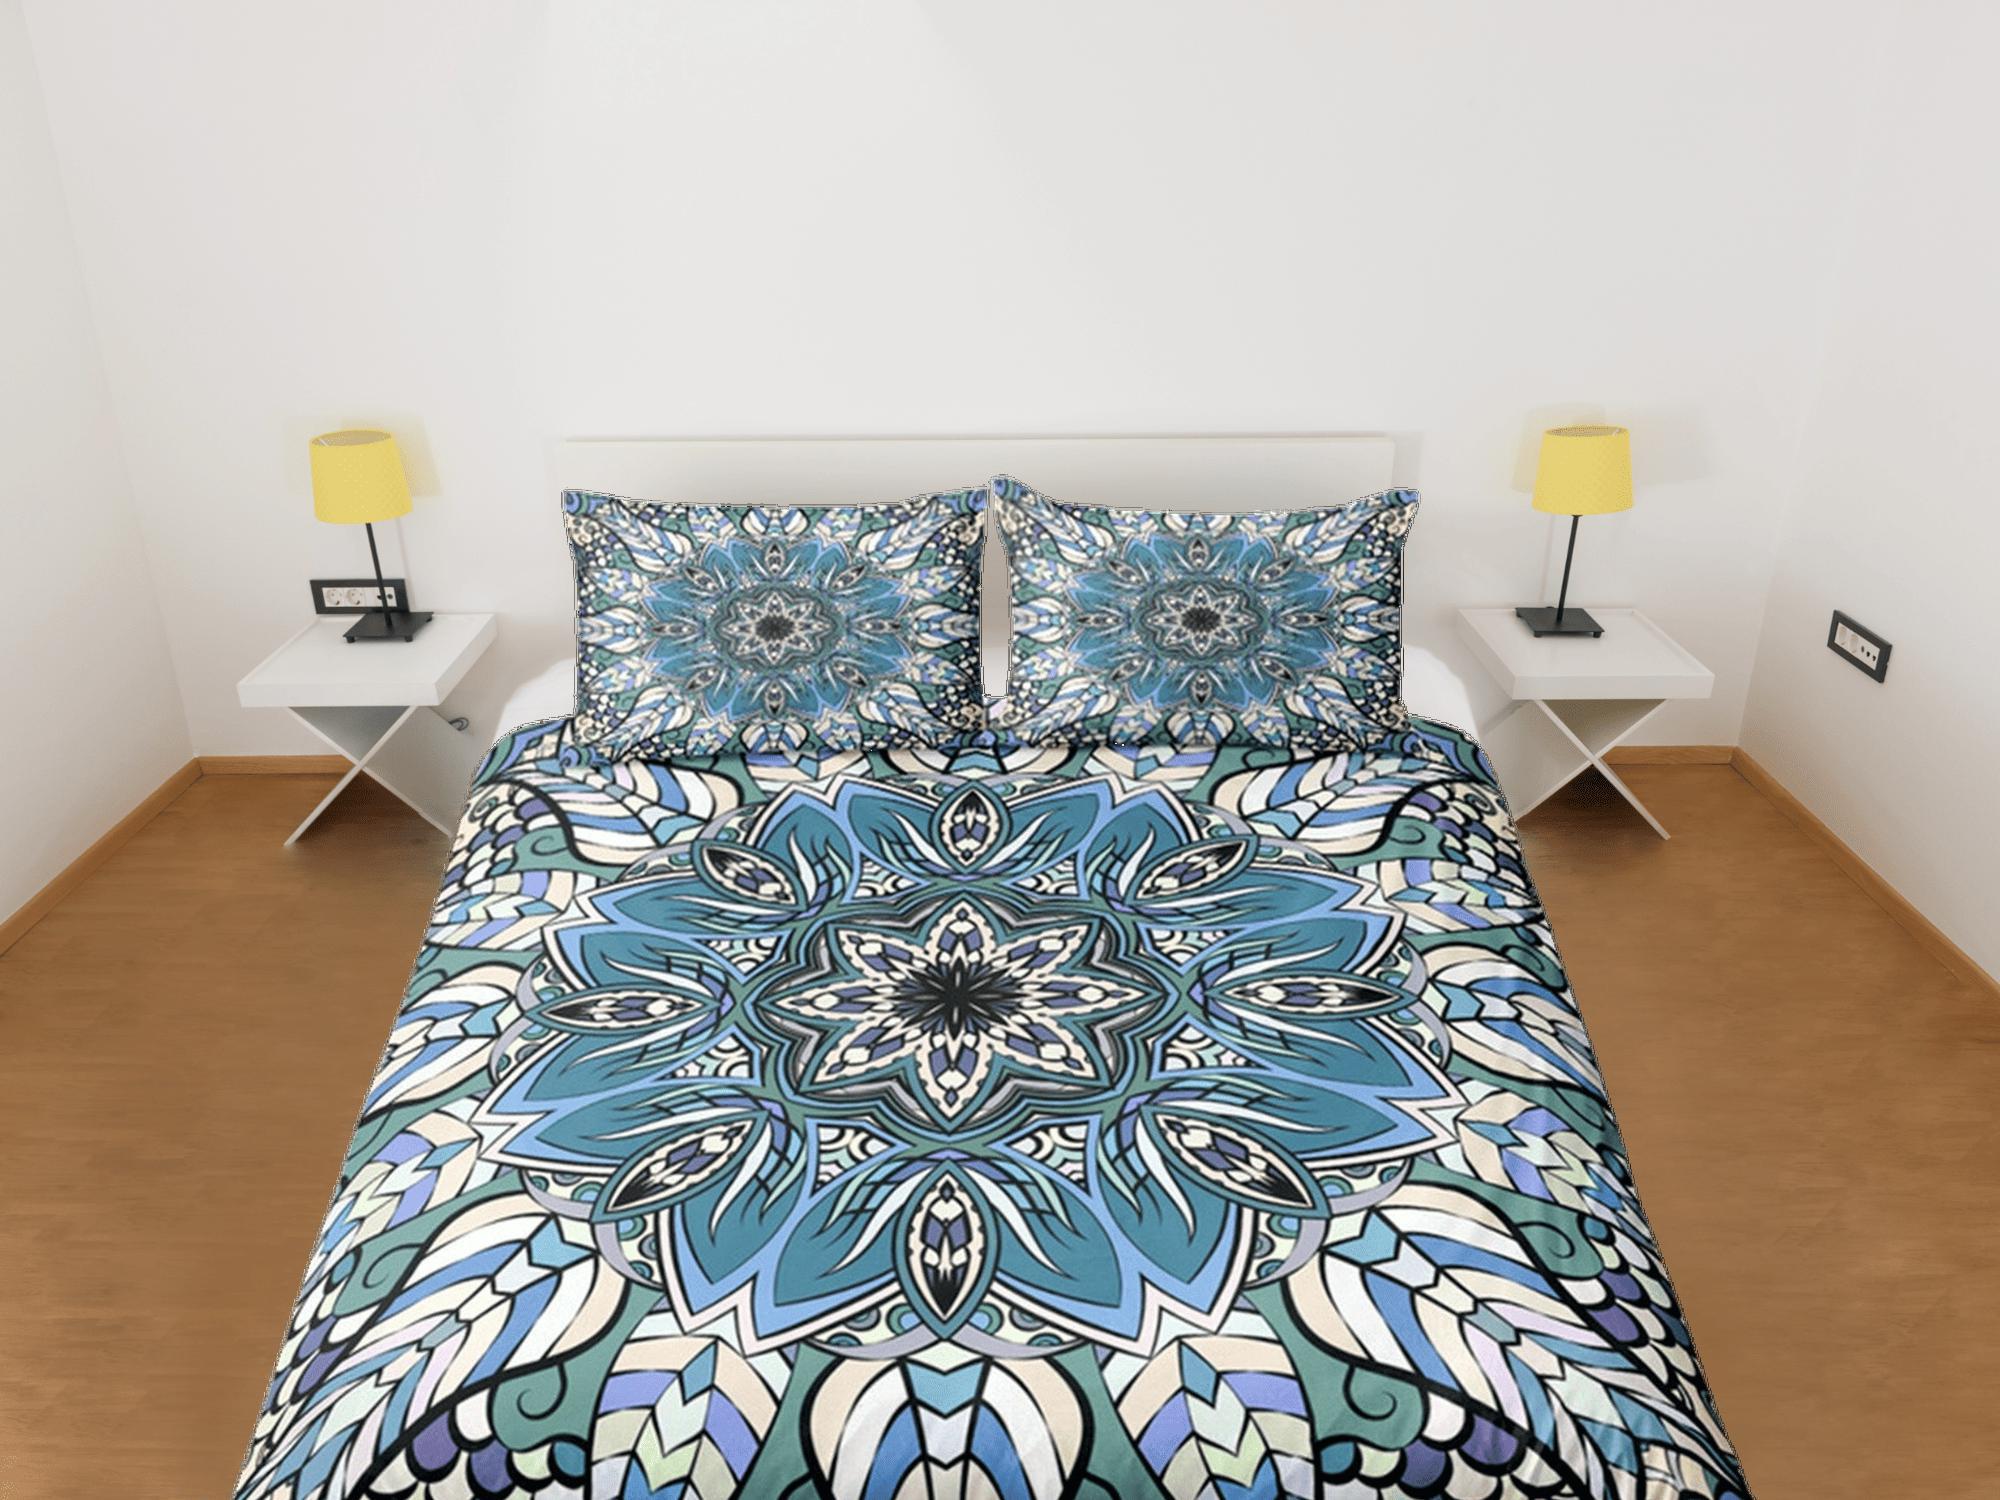 daintyduvet Mandala Duvet Cover Set Boho Bedding, Hippie Dorm Bedding & Pillowcase, Single Bed